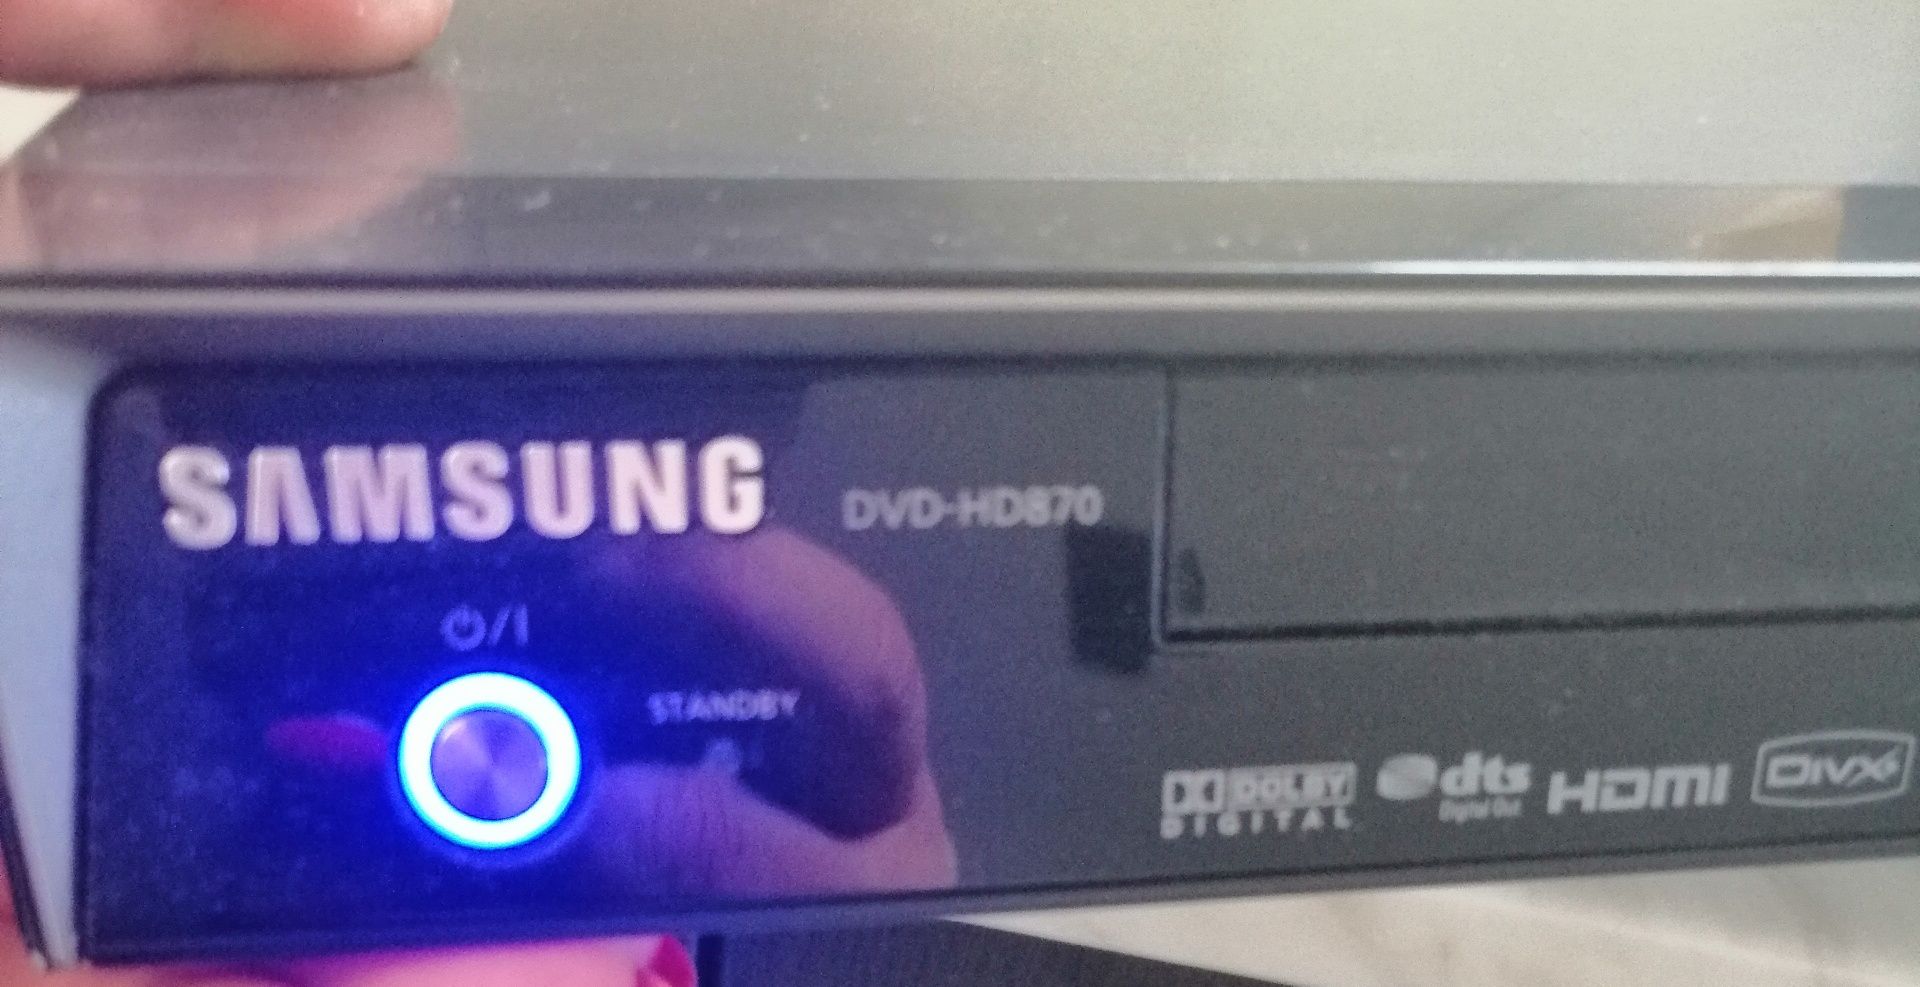 DVD Samsung HD 870 odtwarzacz płyt